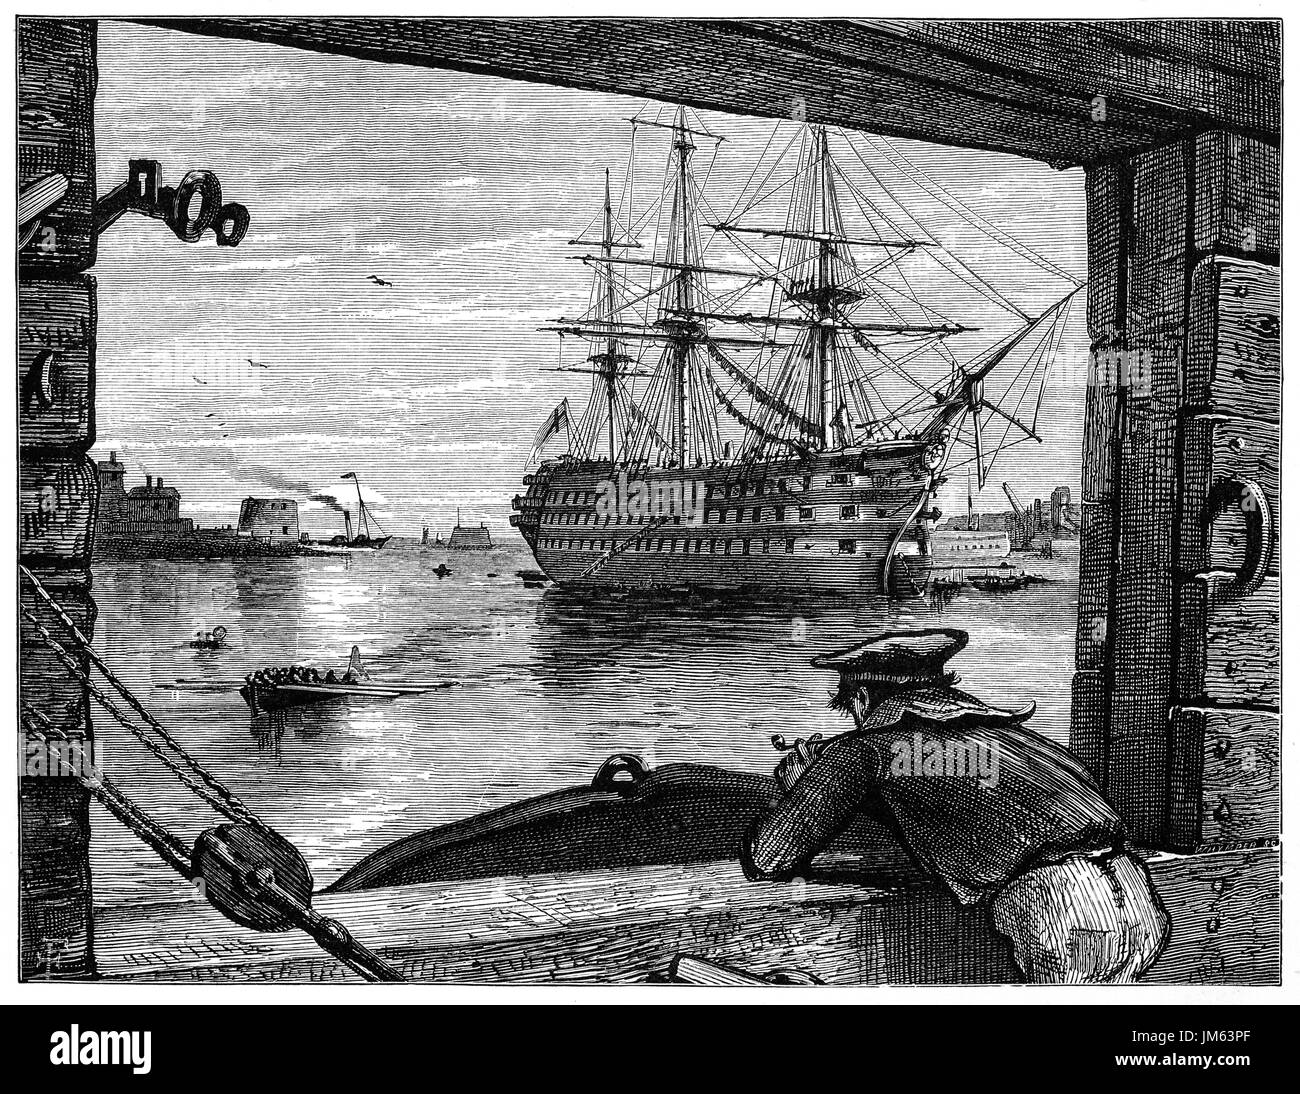 1870 : 1870 : un vieux marin (tar) affichage du HMS Victory à Portsmouth Harbour Gosport off. Elle est un 104-gun des navire de la ligne de la Marine Royale, commandée en 1758, prévue en 1759 et lancé en 1765. Elle est surtout connue pour son rôle de seigneur le vaisseau amiral de Nelson à la bataille de Trafalgar en 1805. Hampshire, Angleterre. Banque D'Images